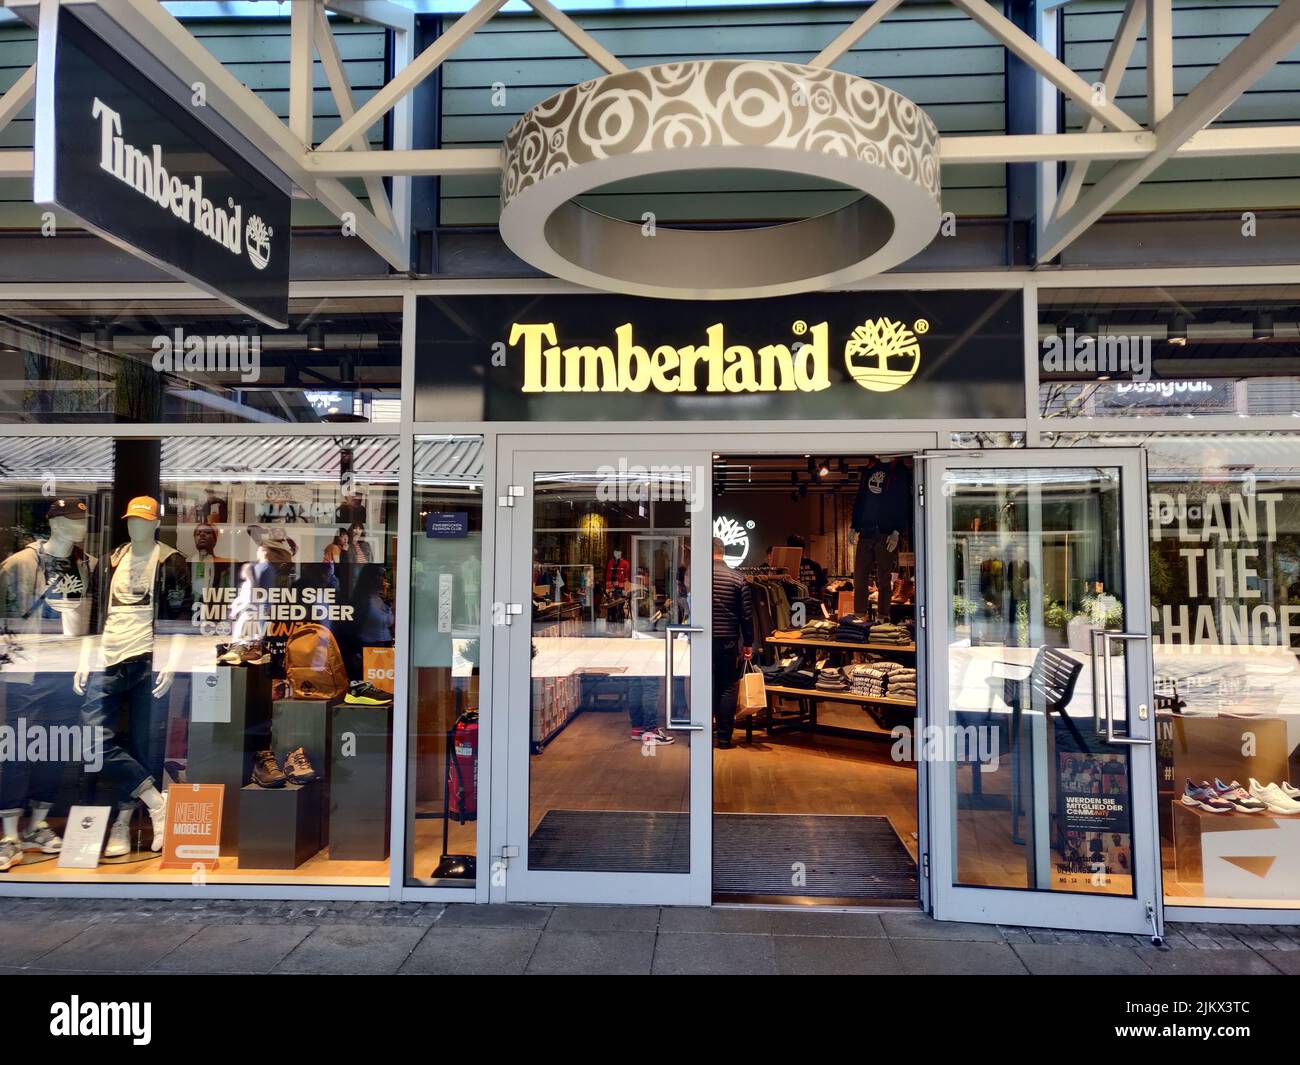 La facciata di un negozio Timberland in un centro commerciale outlet in Germania Foto Stock